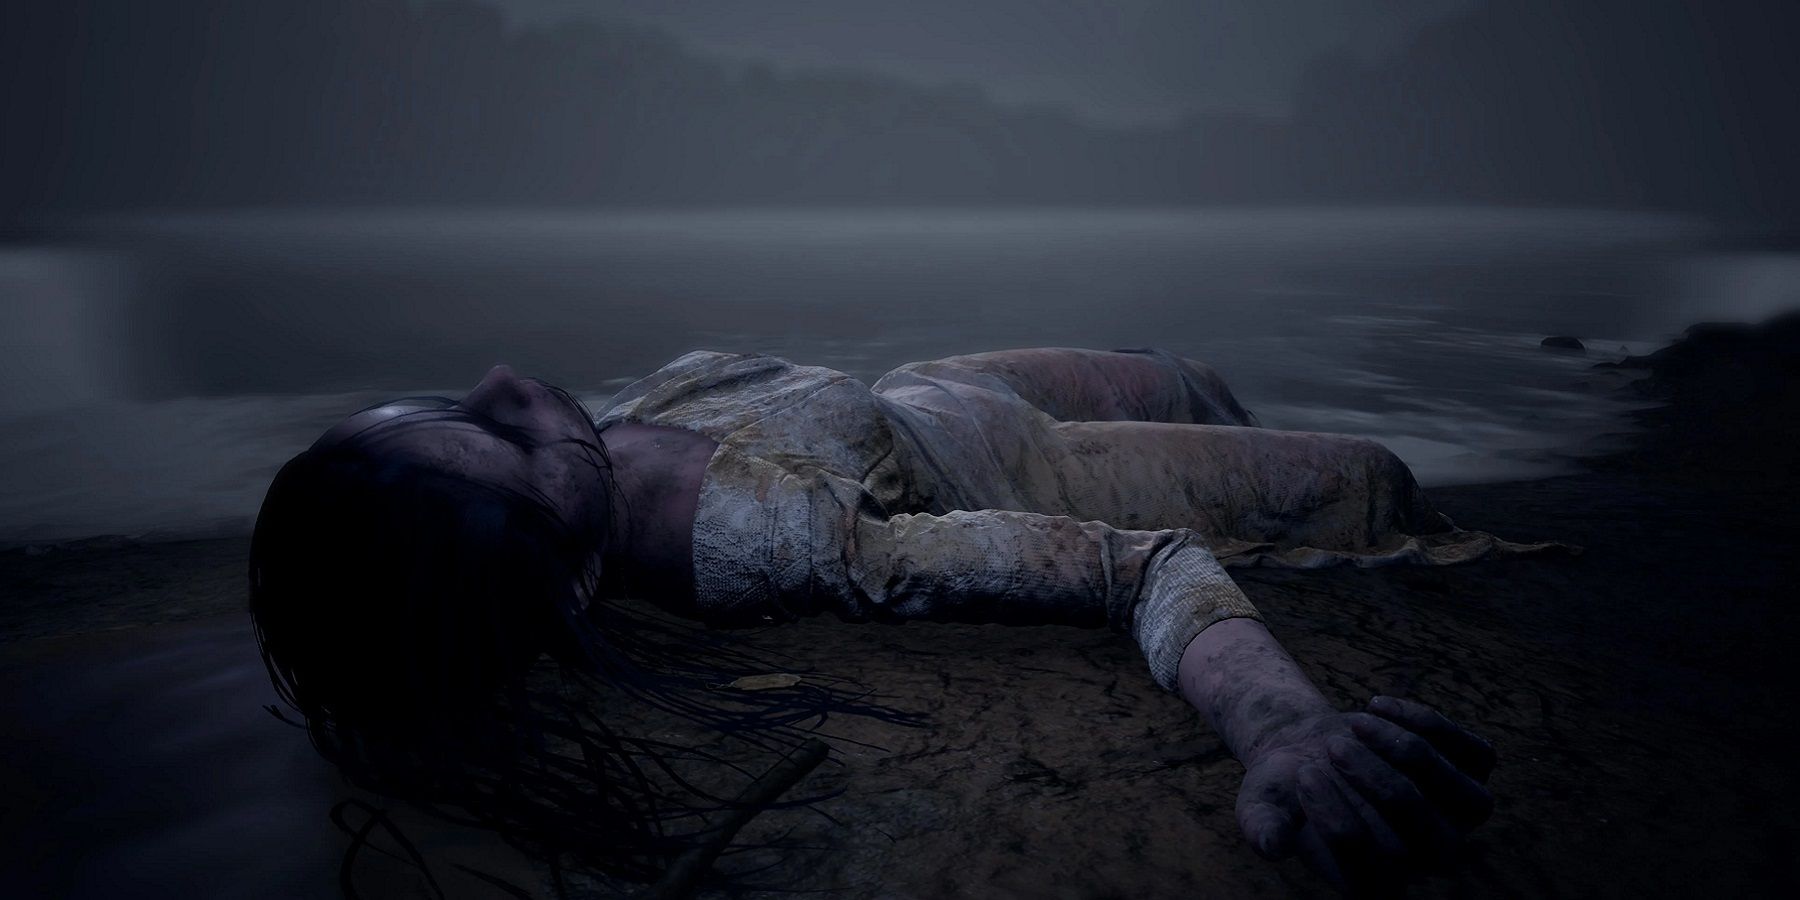 从Martha is Dead的图片上可以看到一名死去的女性被海浪冲到岸边的画面